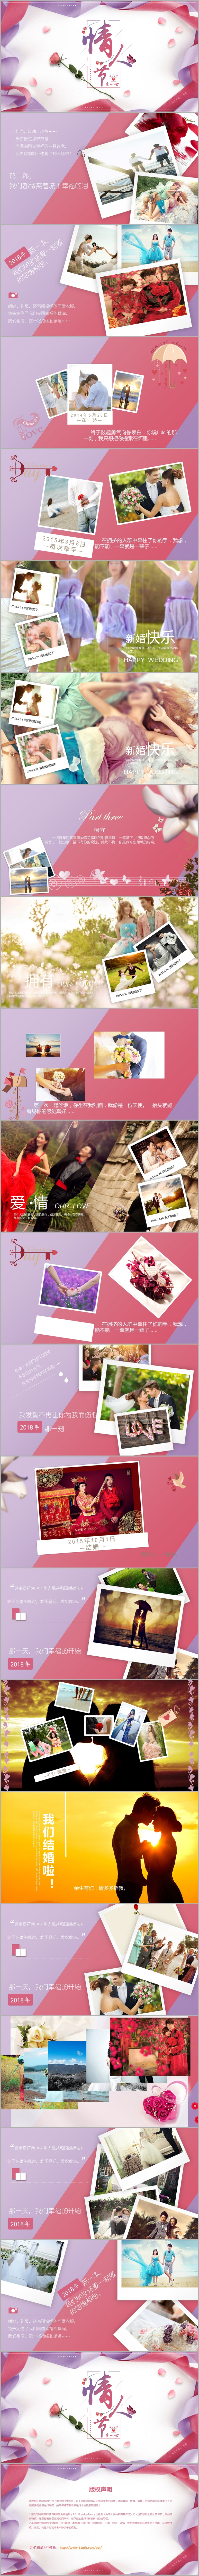 七夕情人节唯美浪漫紫色表白纪念册相册照片墙婚纱照ppt